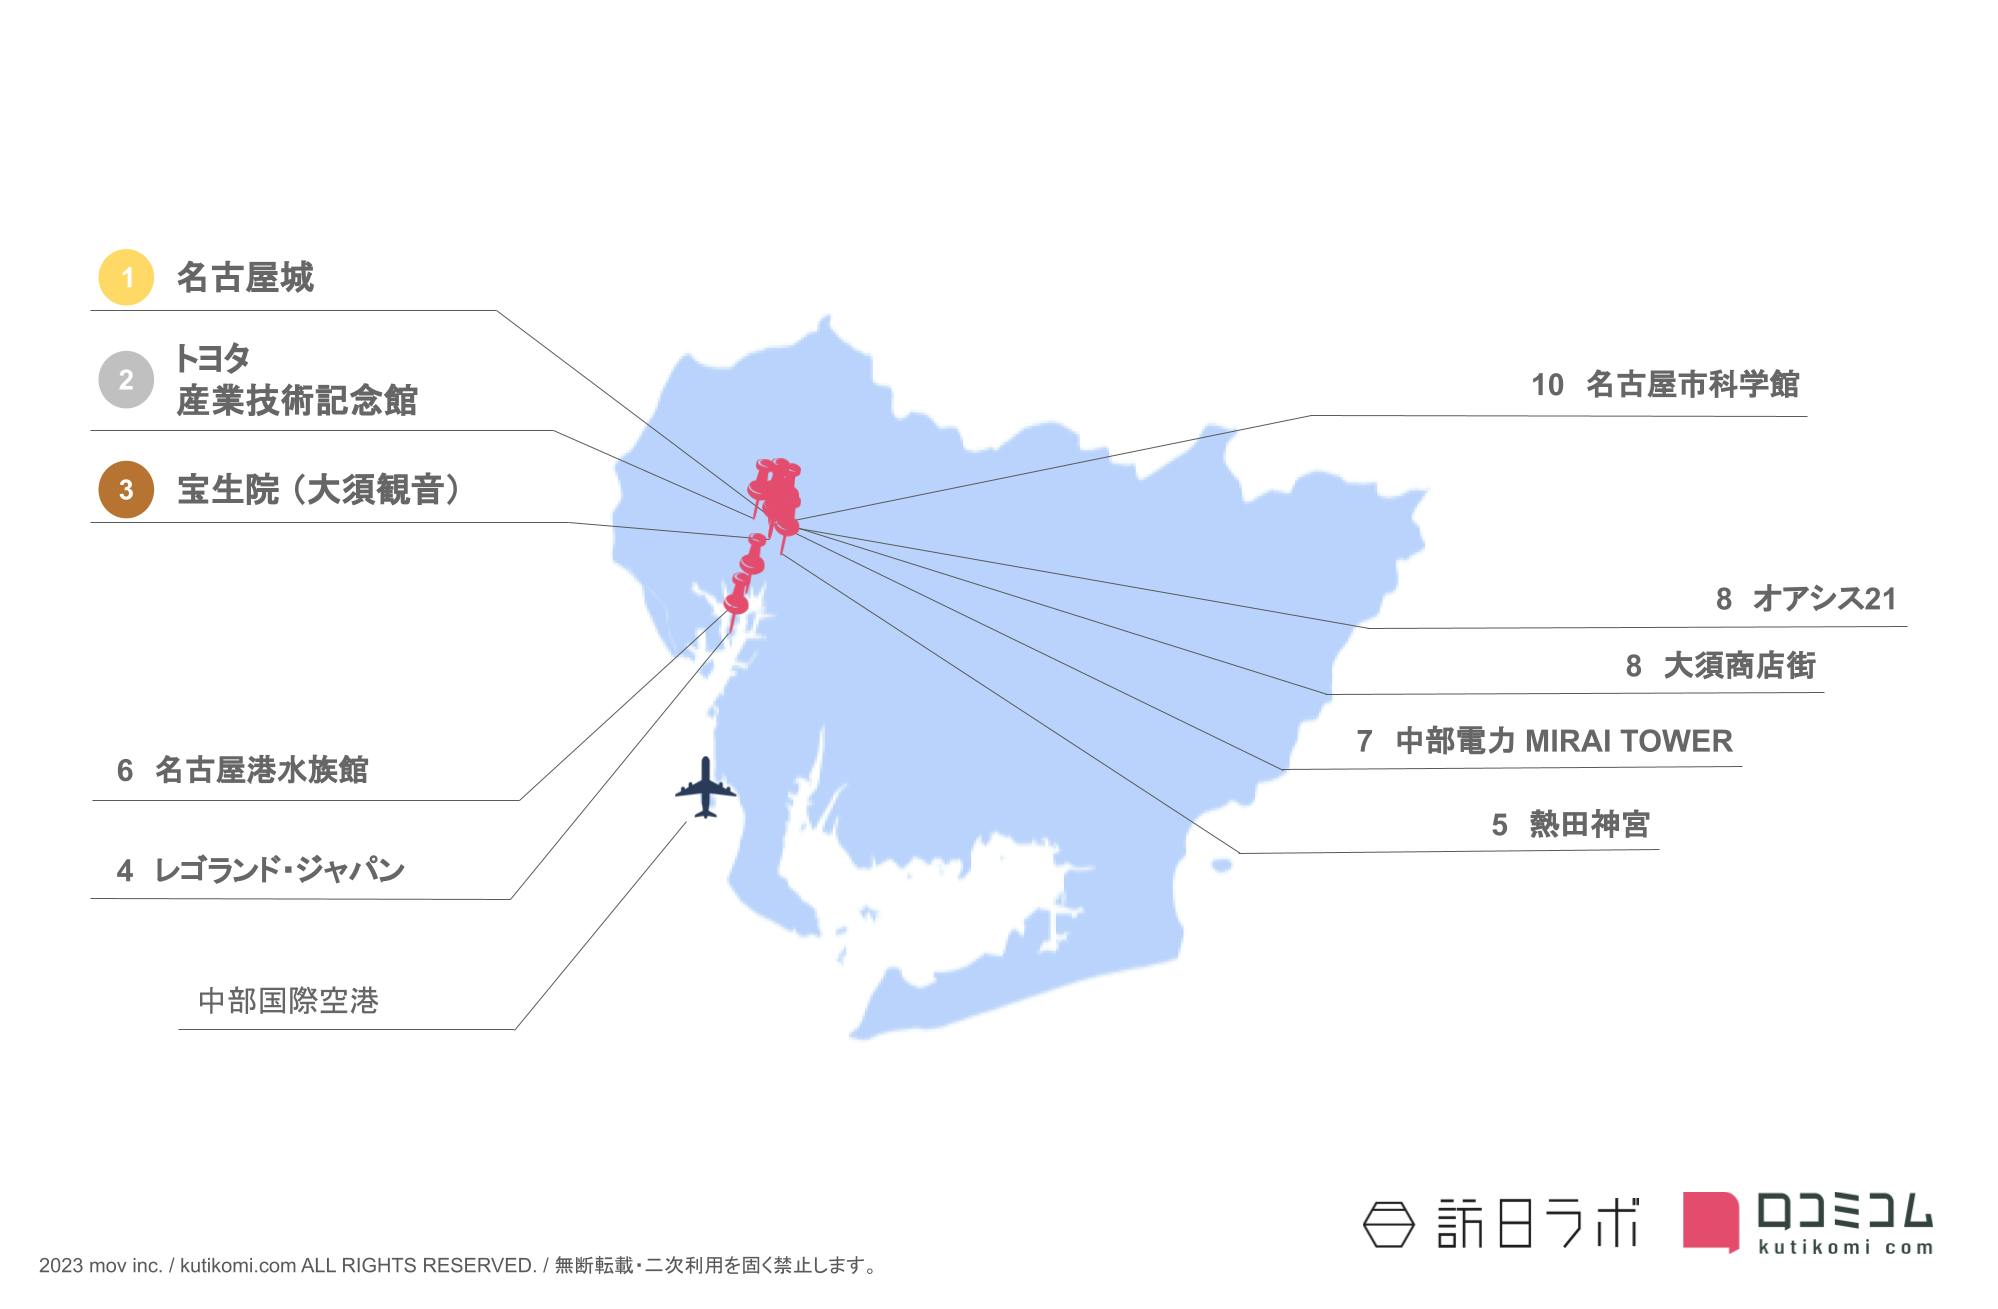 愛知県インバウンド人気観光スポットランキング